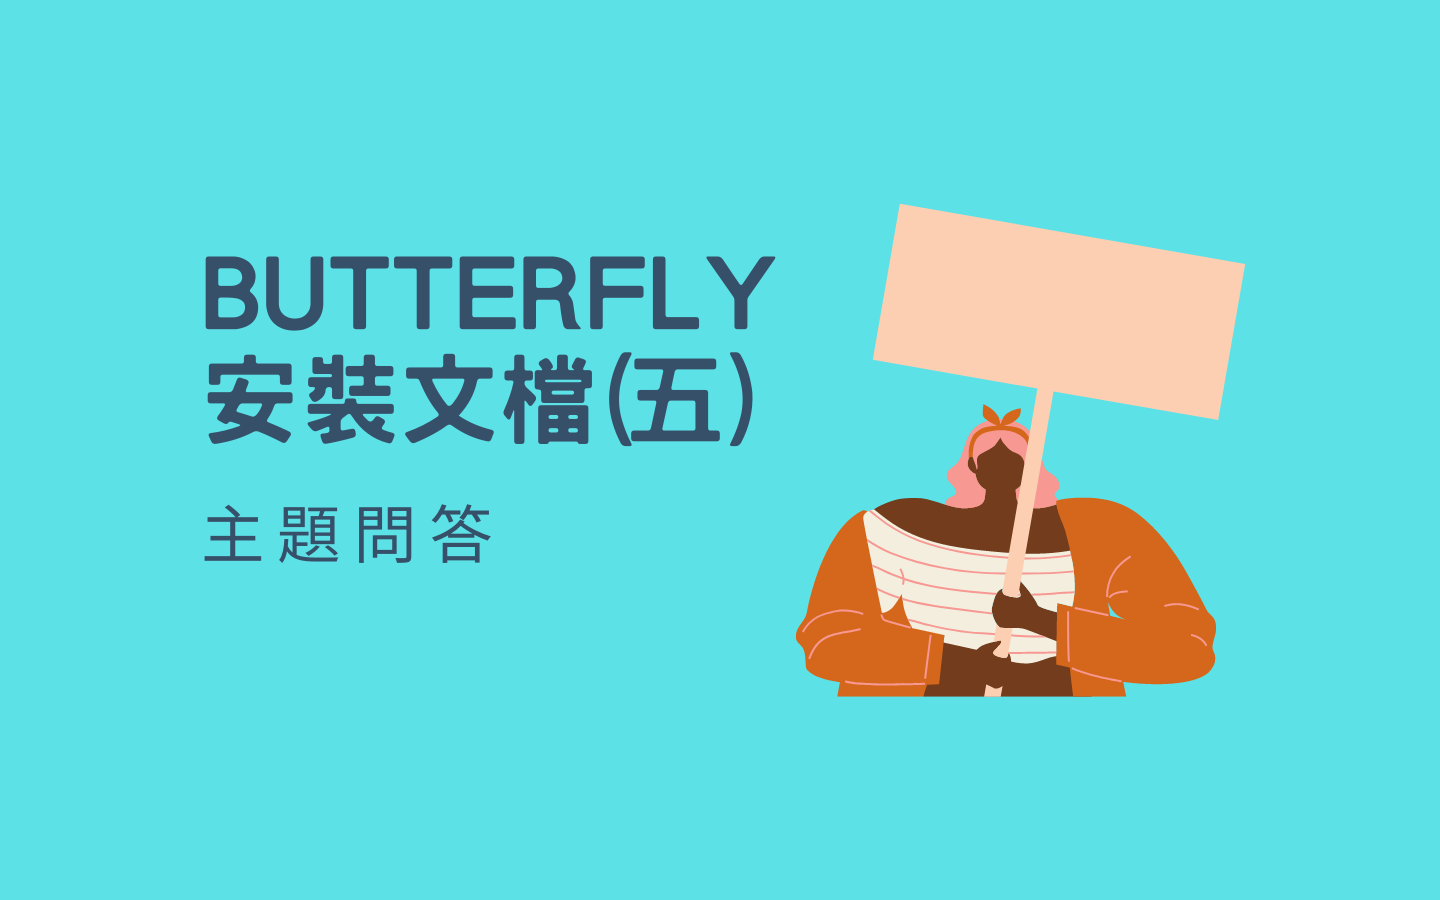 Butterfly 安装文档(五) 主题问答